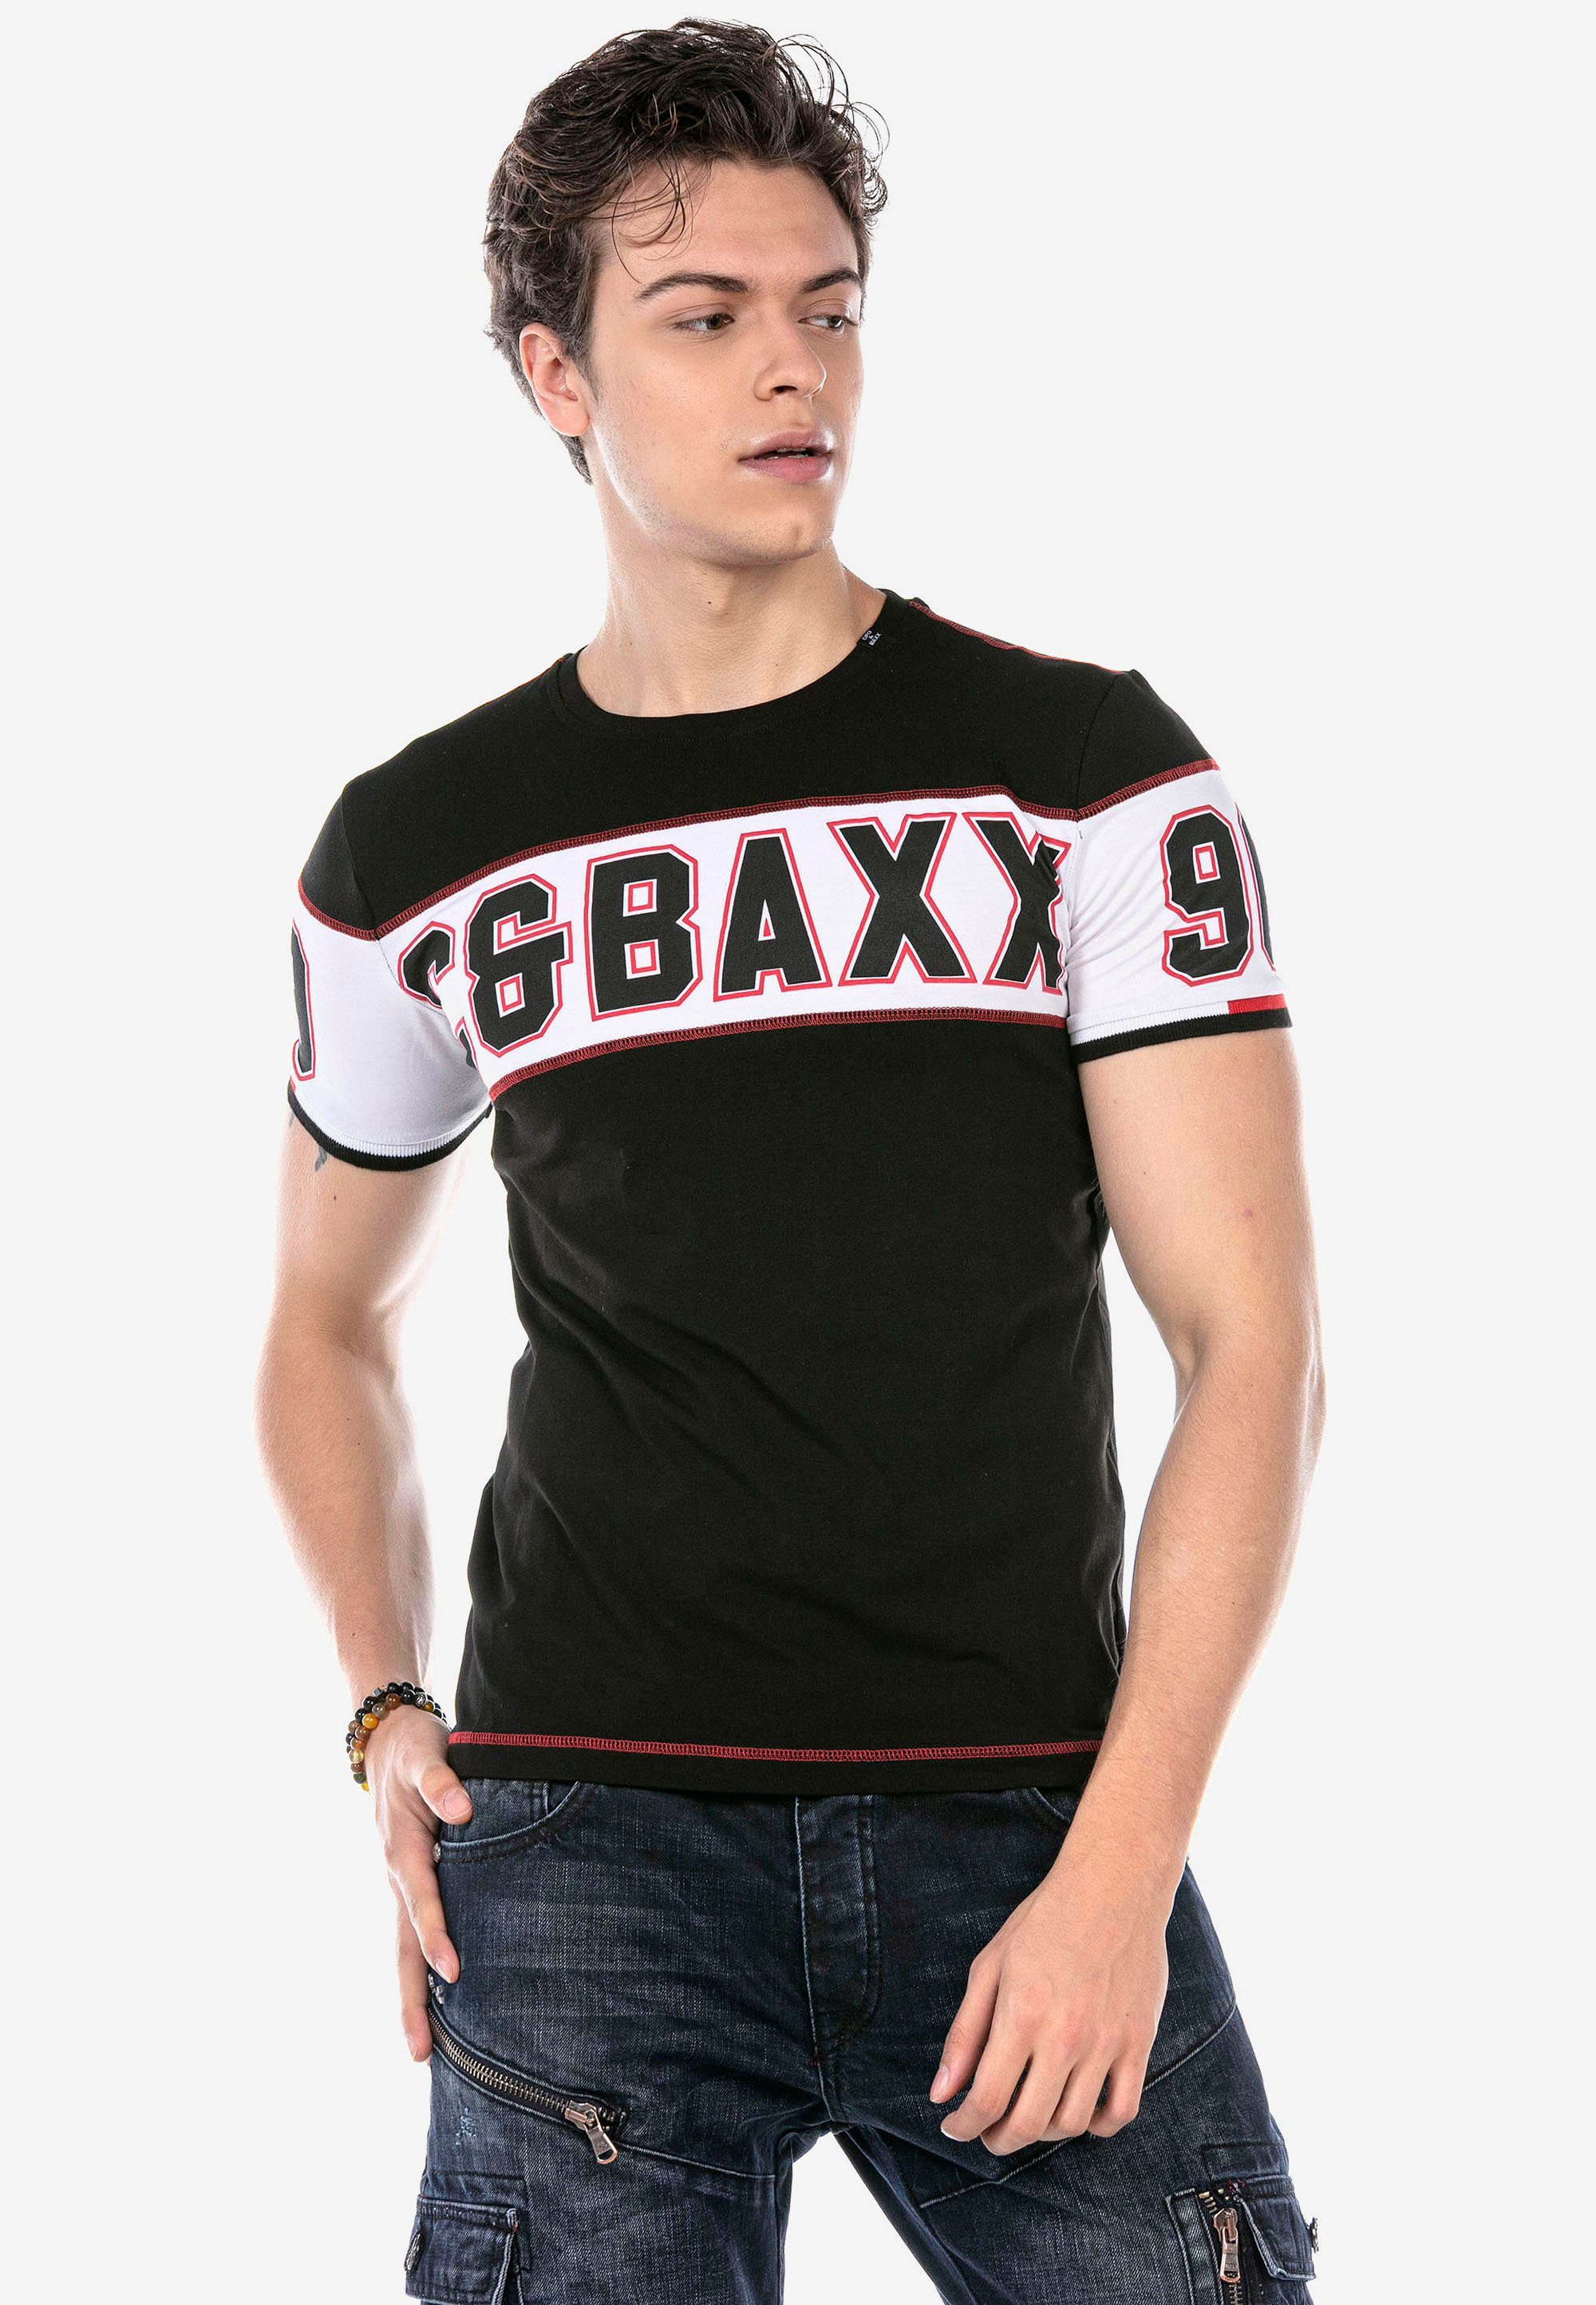 mit schwarz Cipo & Print T-Shirt auffälligem Baxx